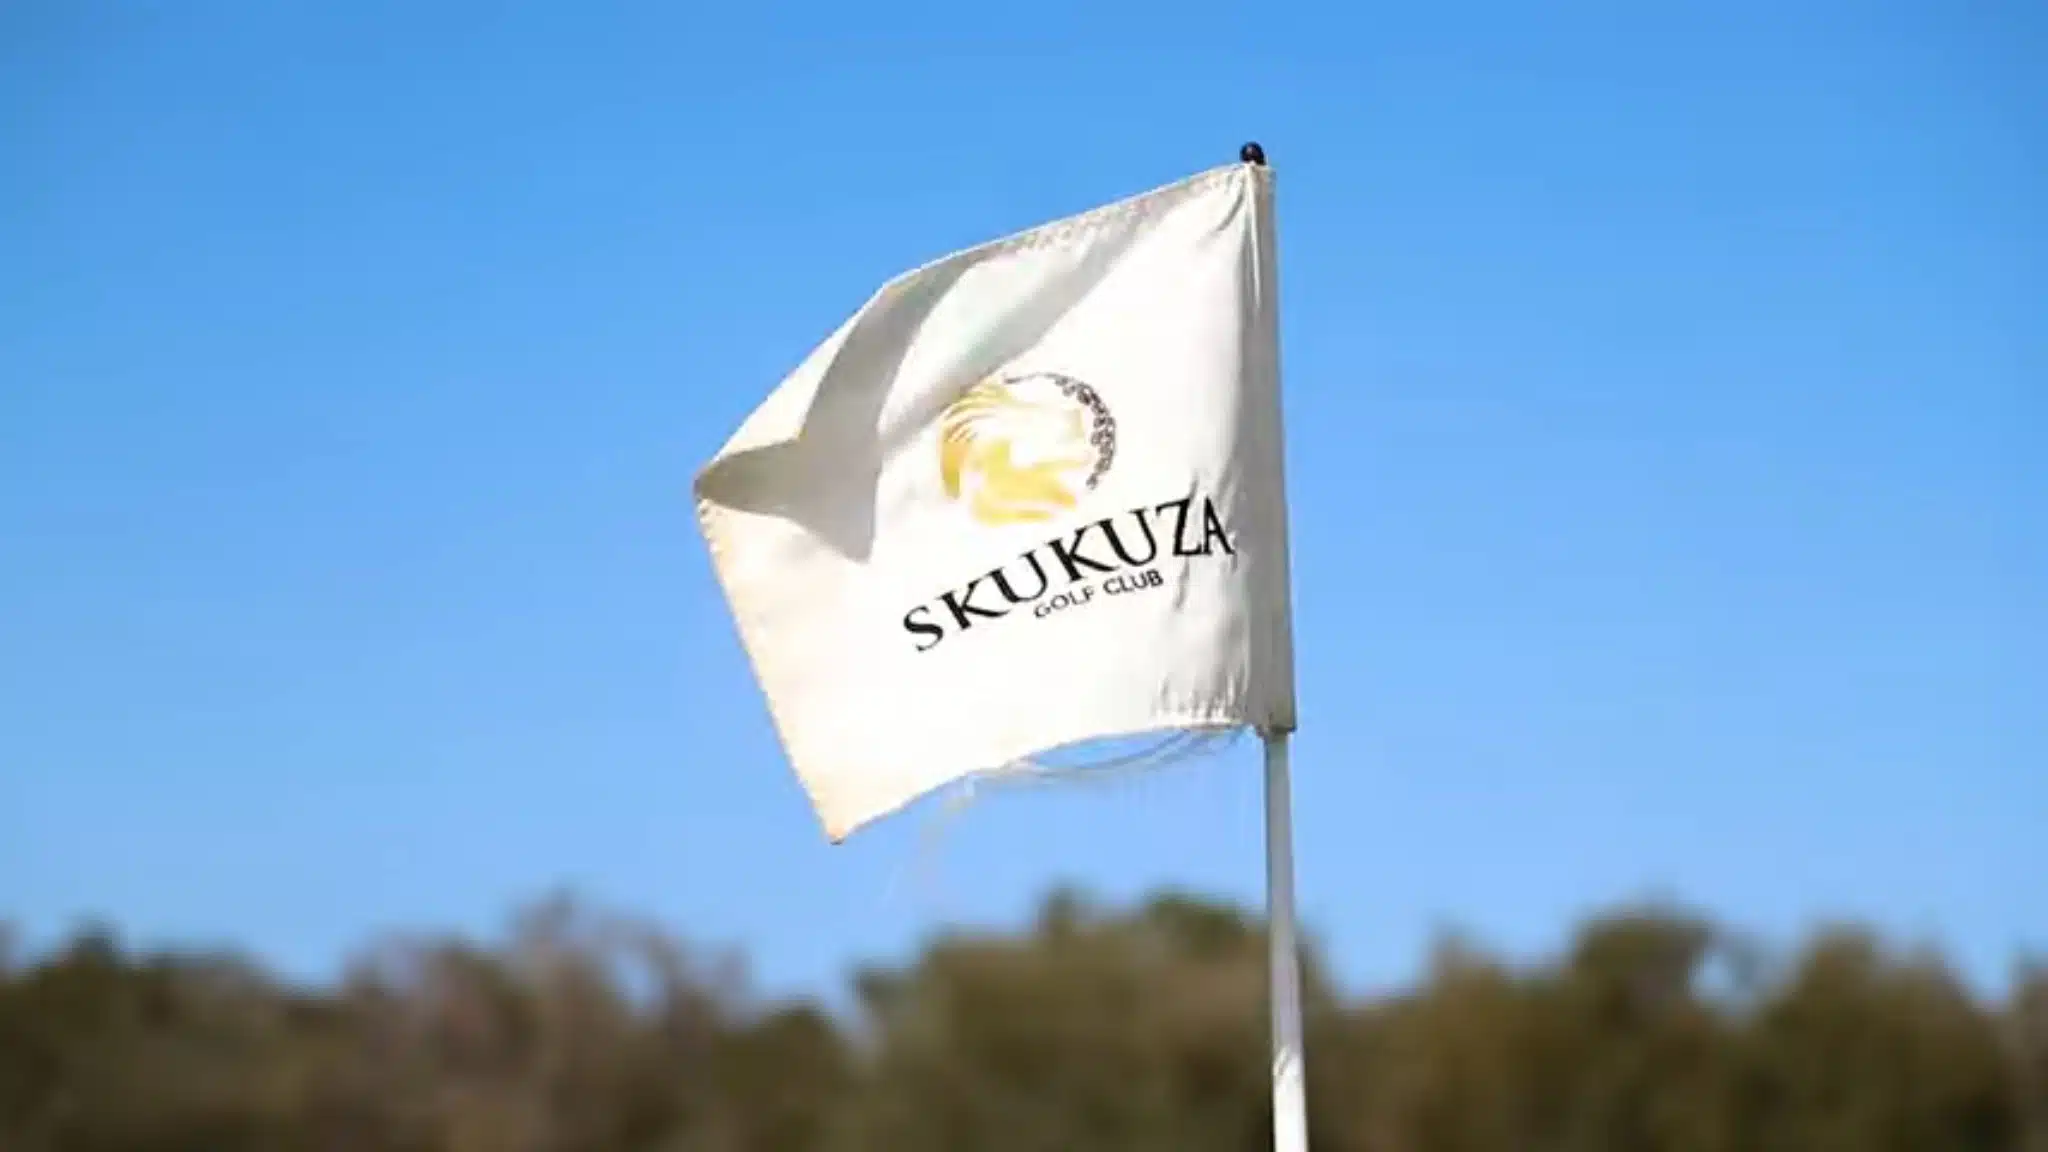 Skukuza Golf Club Suedafrika 021 Afrika Golfreisen